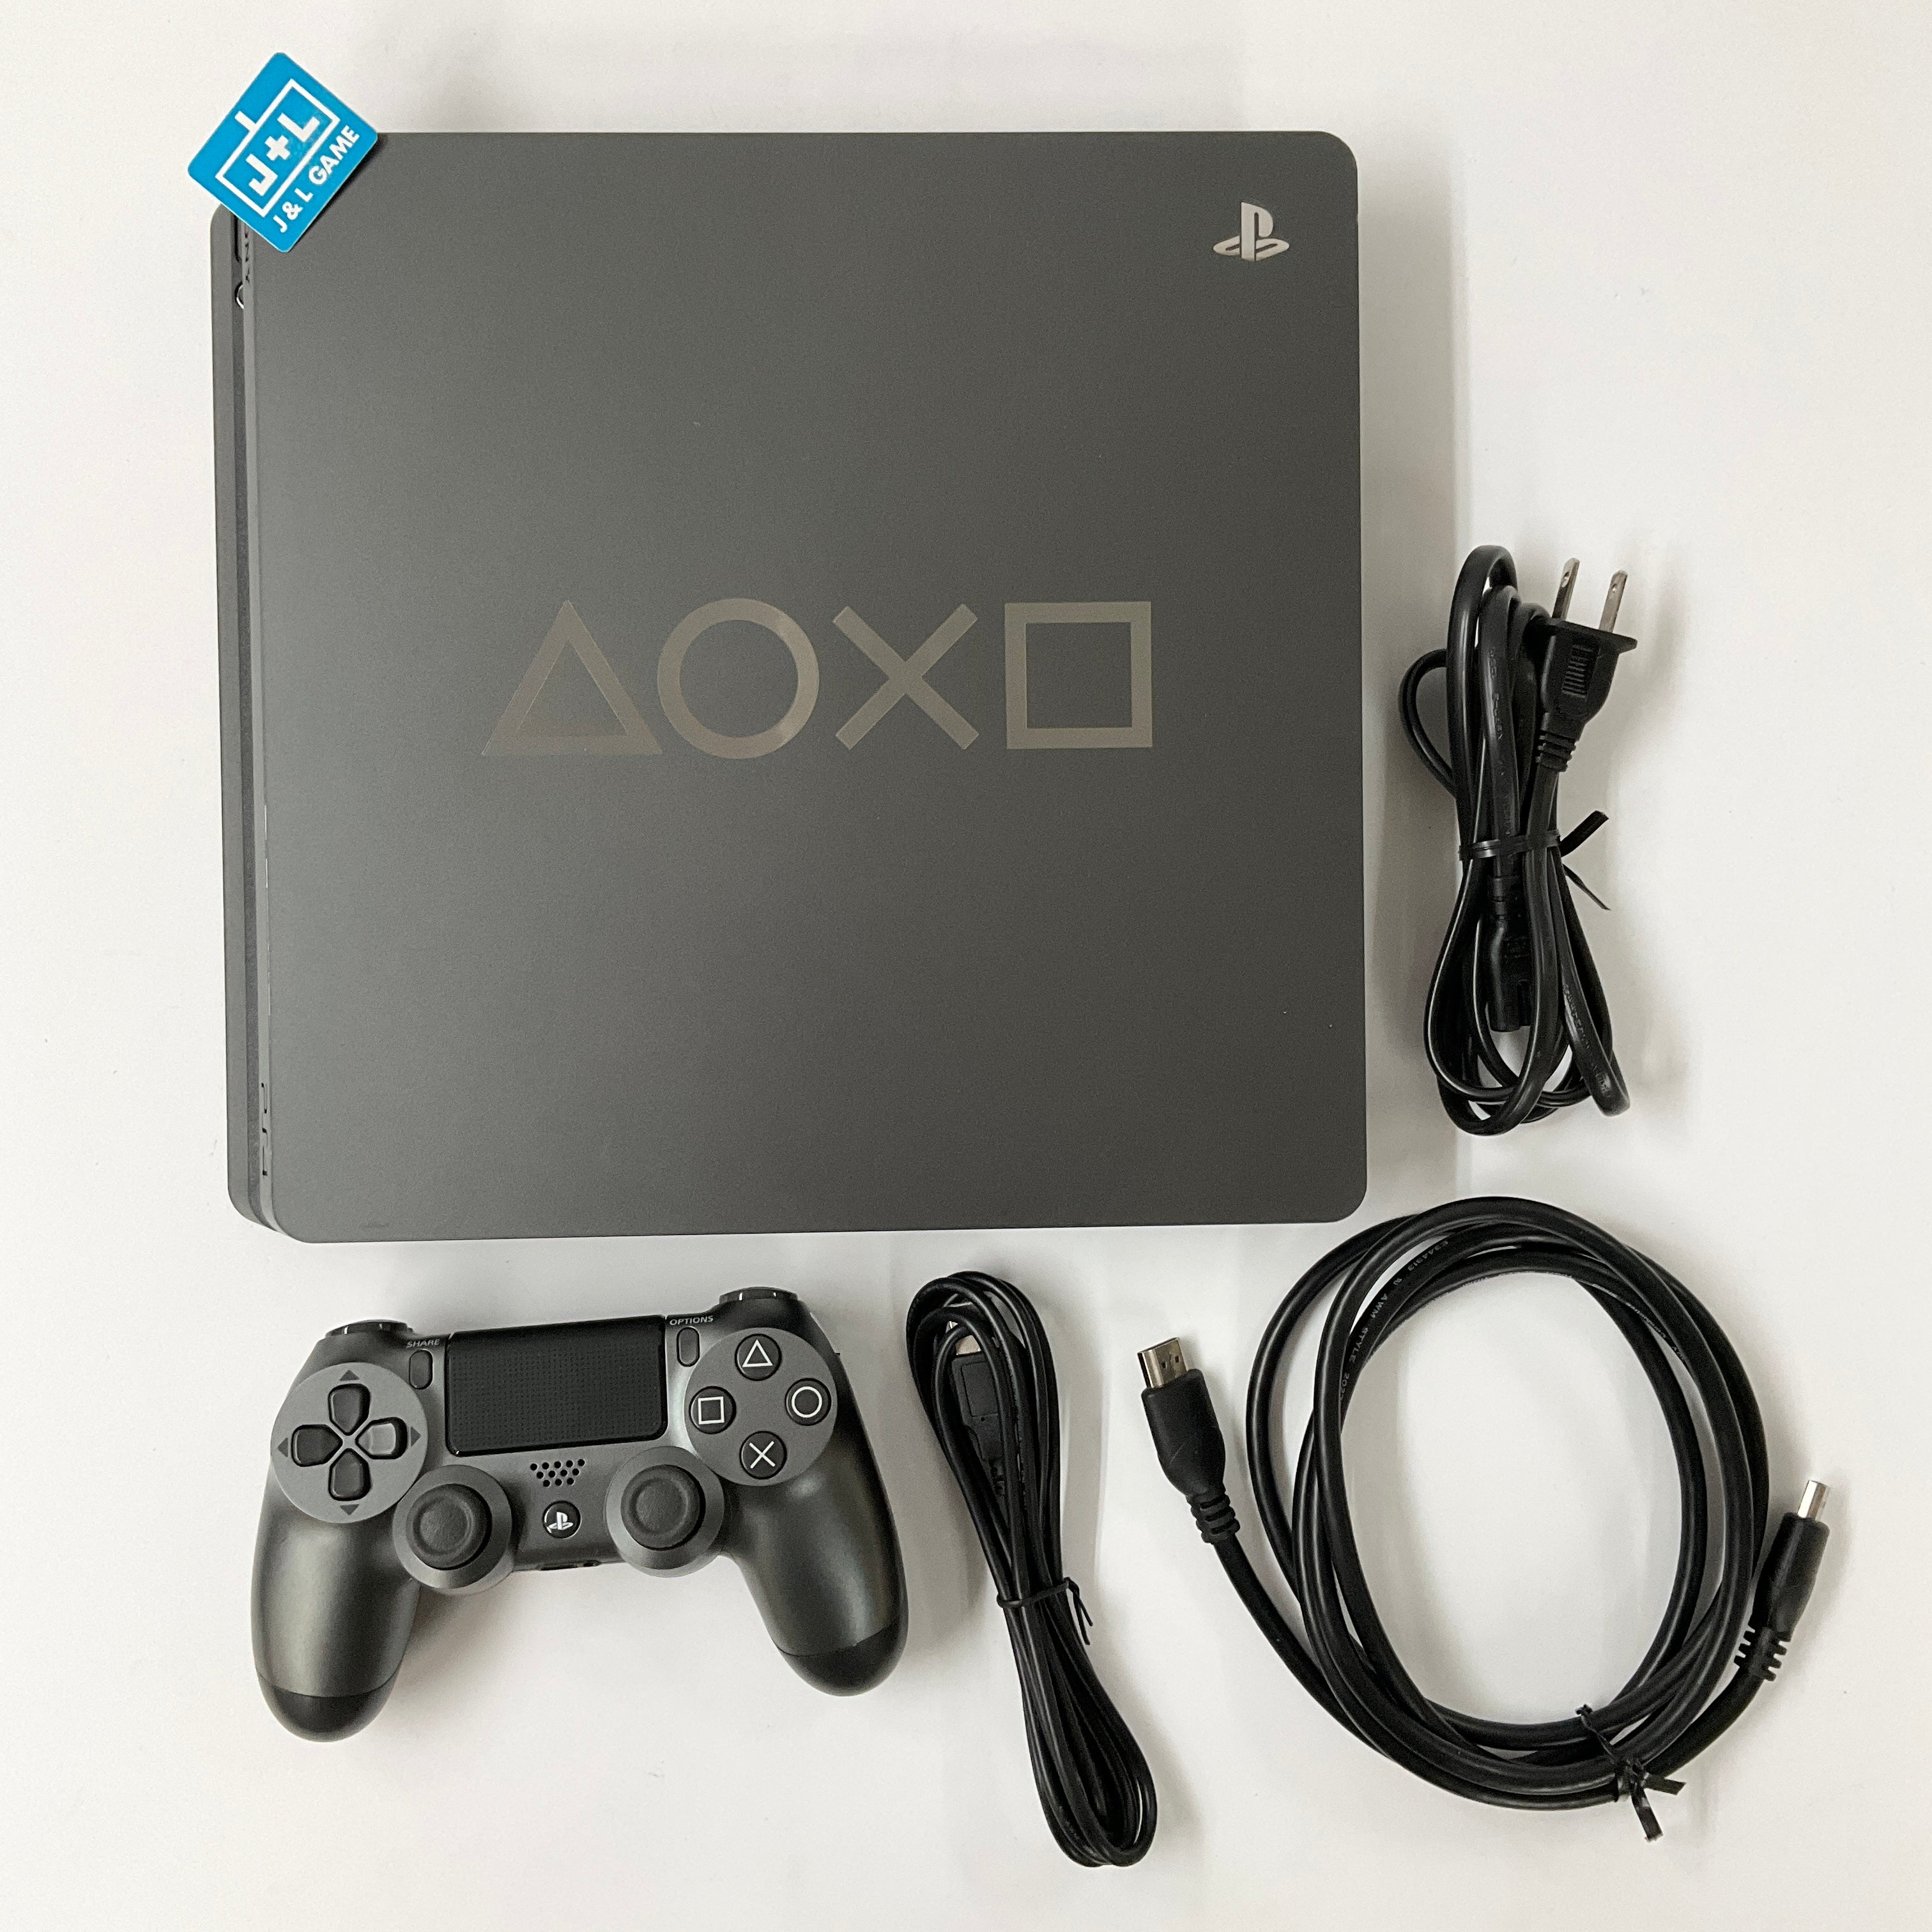 Sony PlayStation 4 Consola Slim de 1TB Limited Edition Days of Play – Hooli